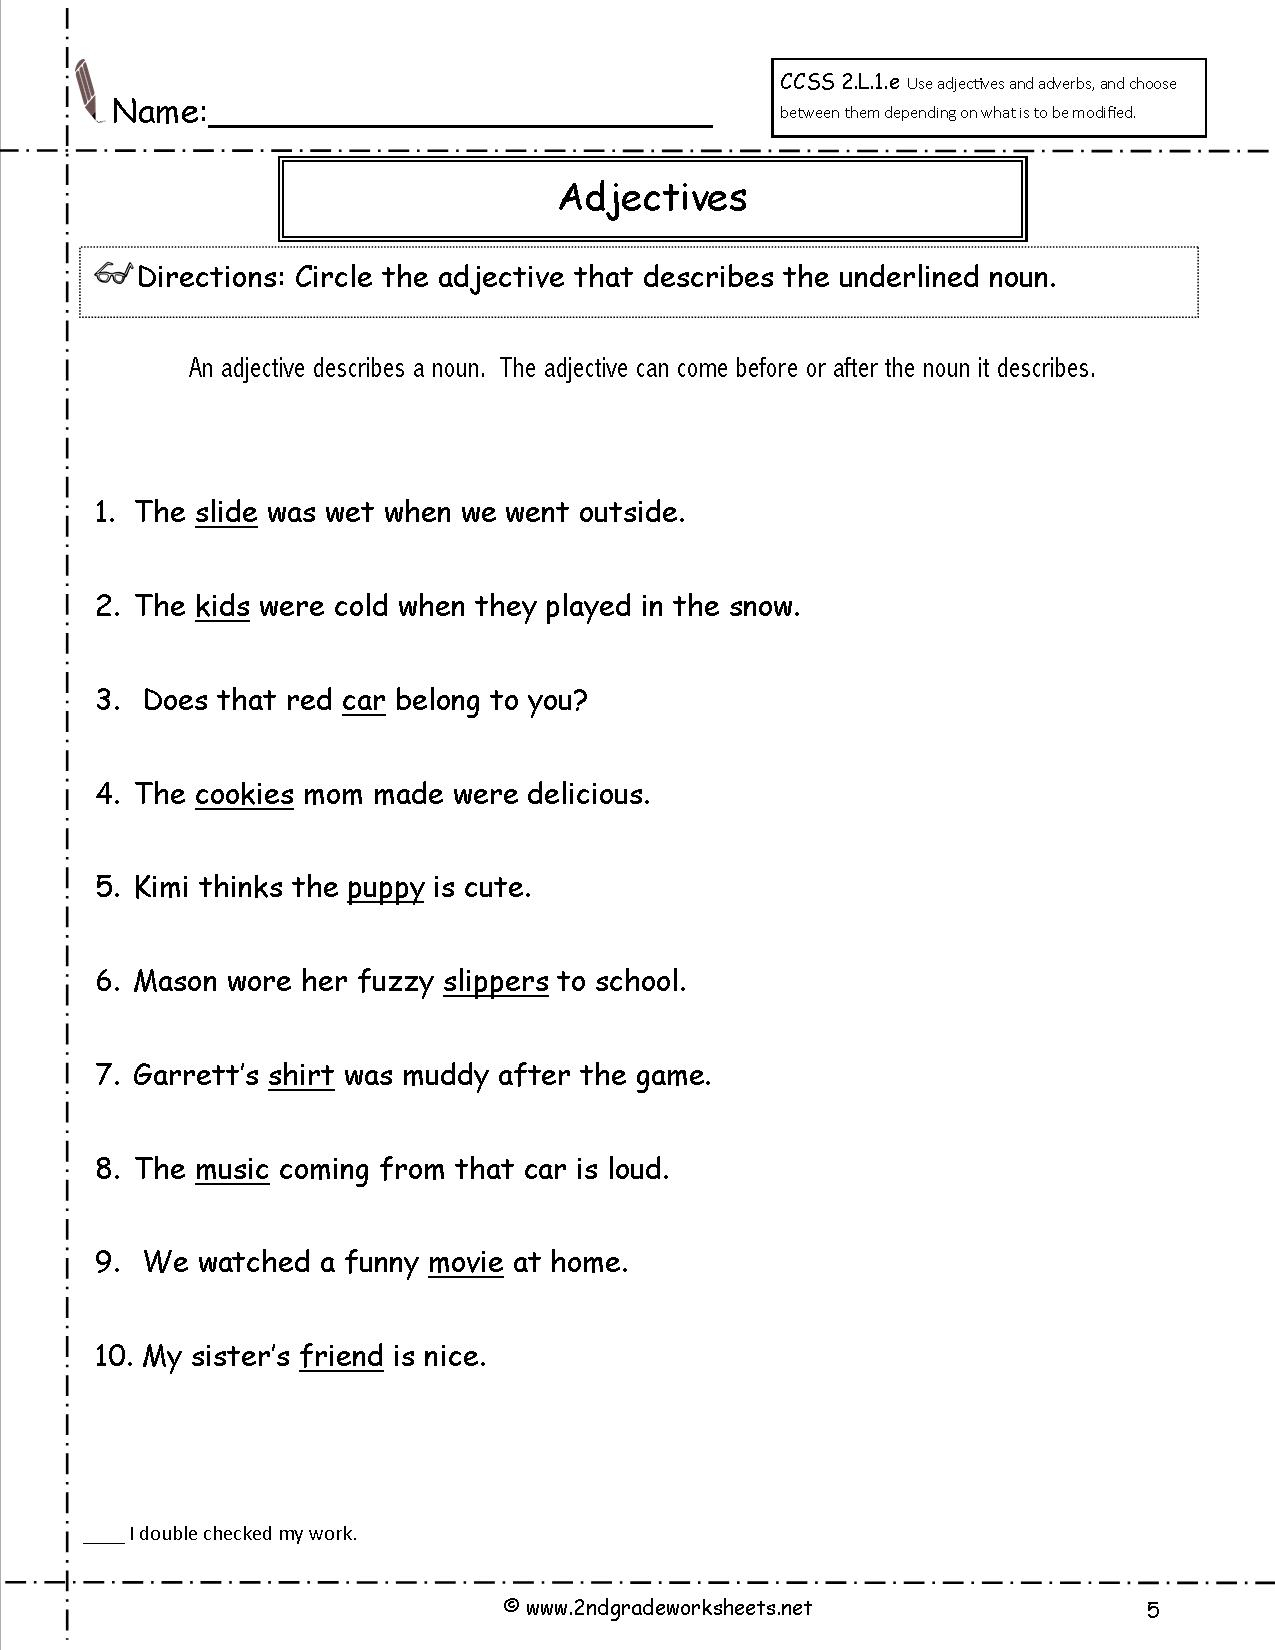 adjectives-worksheets-super-teacher-adjectiveworksheets